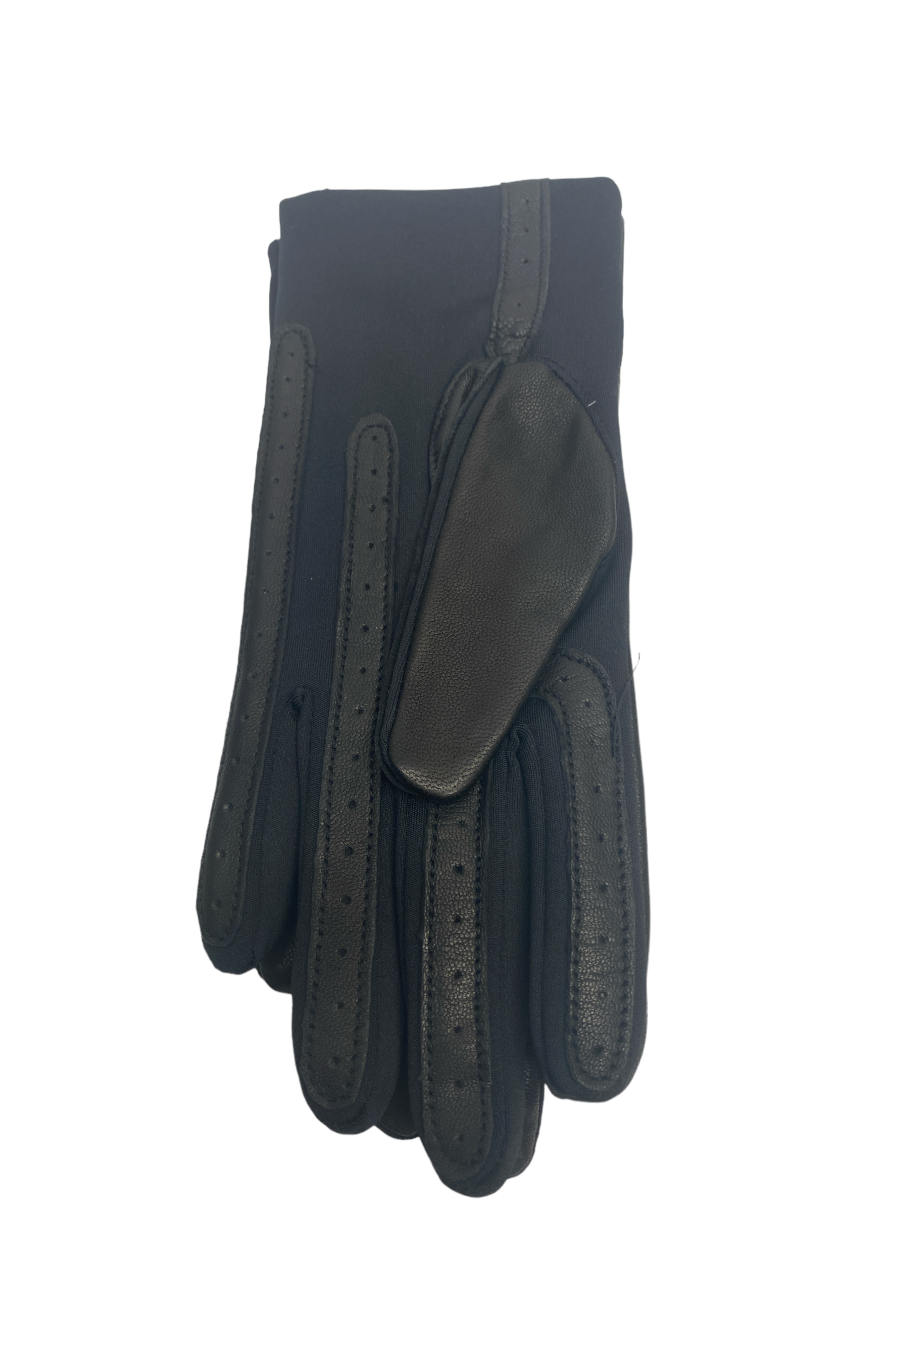 Gant noir tactile en cuir et lycra taille unique - Isotoner